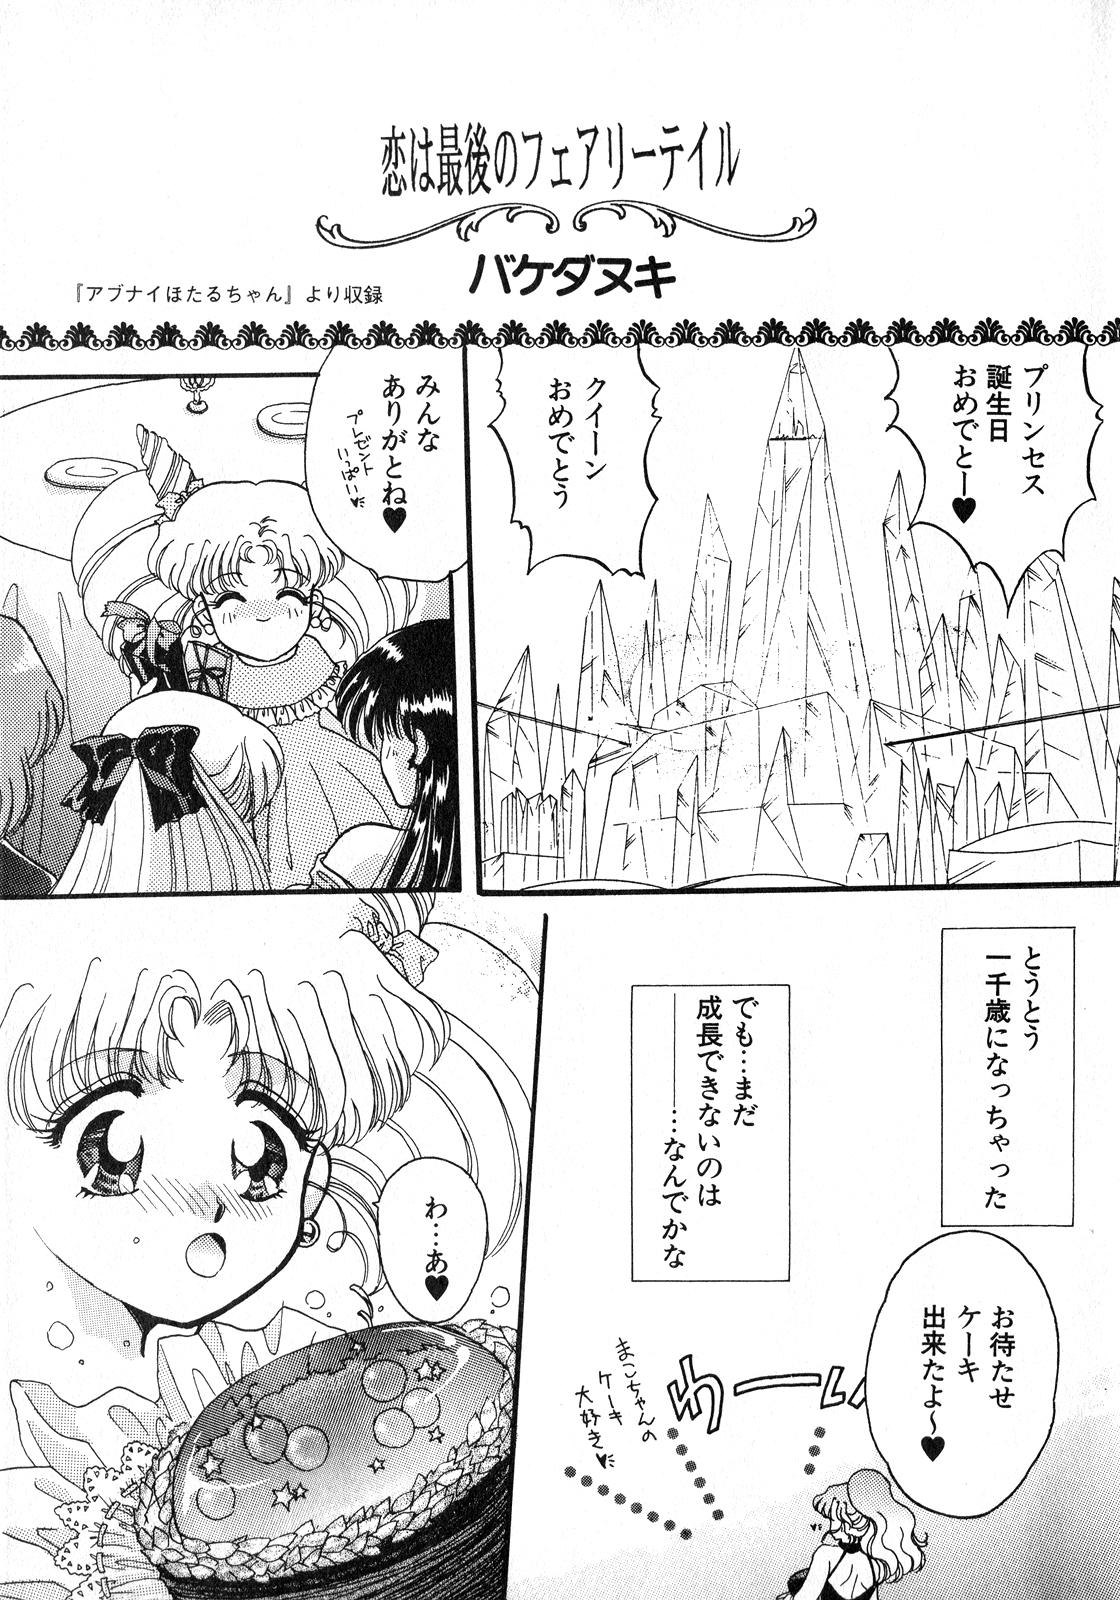 Amateur Blowjob Lunatic Party 8 - Sailor moon Butt Plug - Page 4